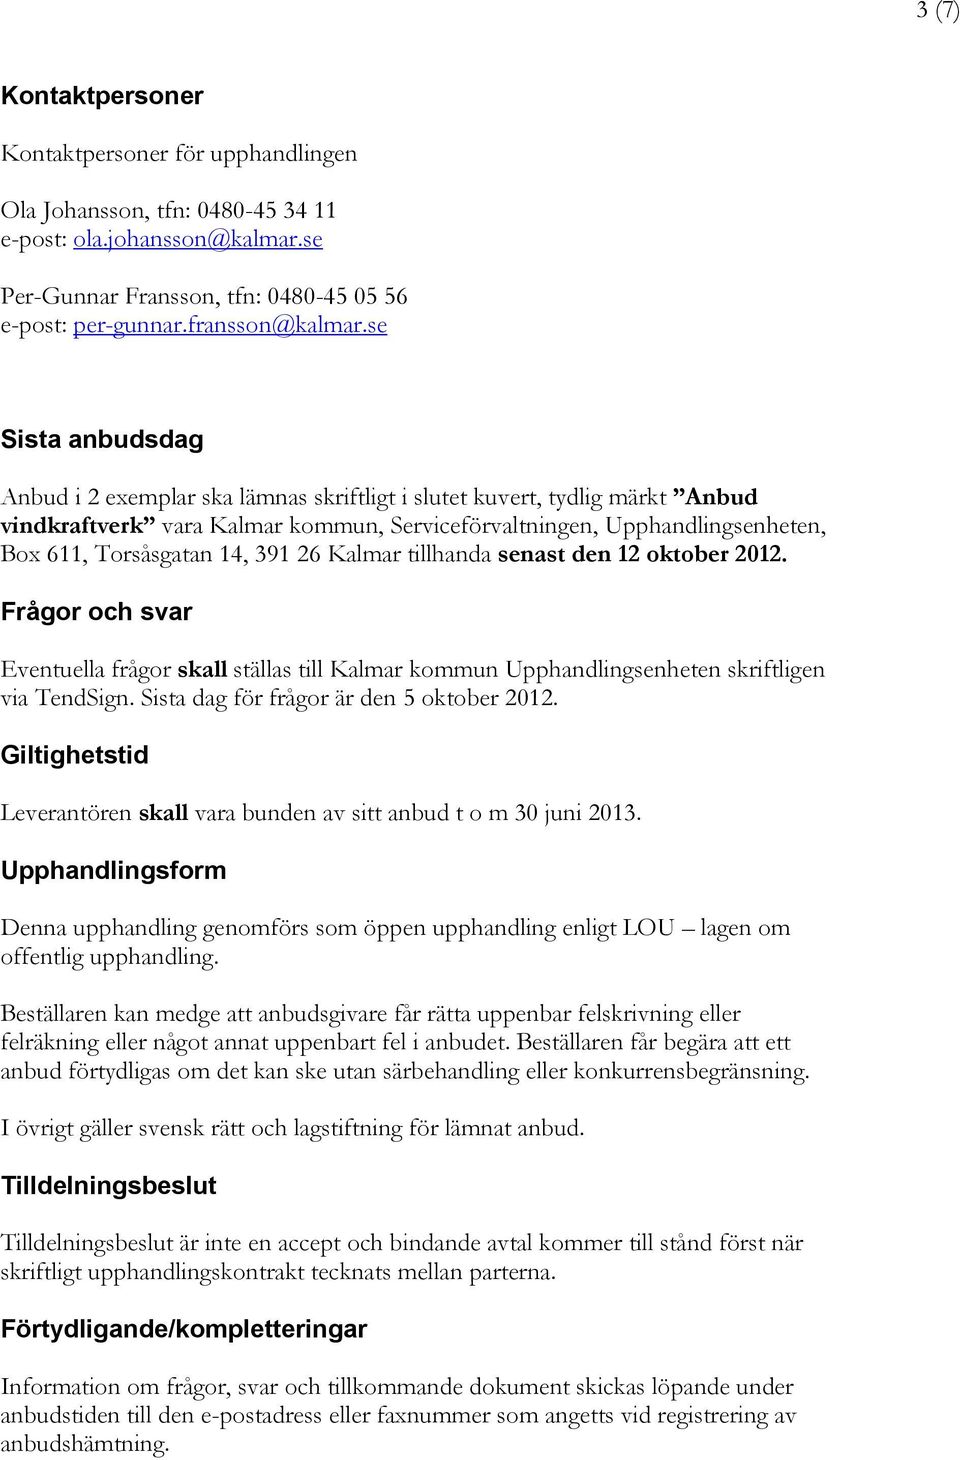 391 26 Kalmar tillhanda senast den 12 oktober 2012. Frågor och svar Eventuella frågor skall ställas till Kalmar kommun Upphandlingsenheten skriftligen via TendSign.